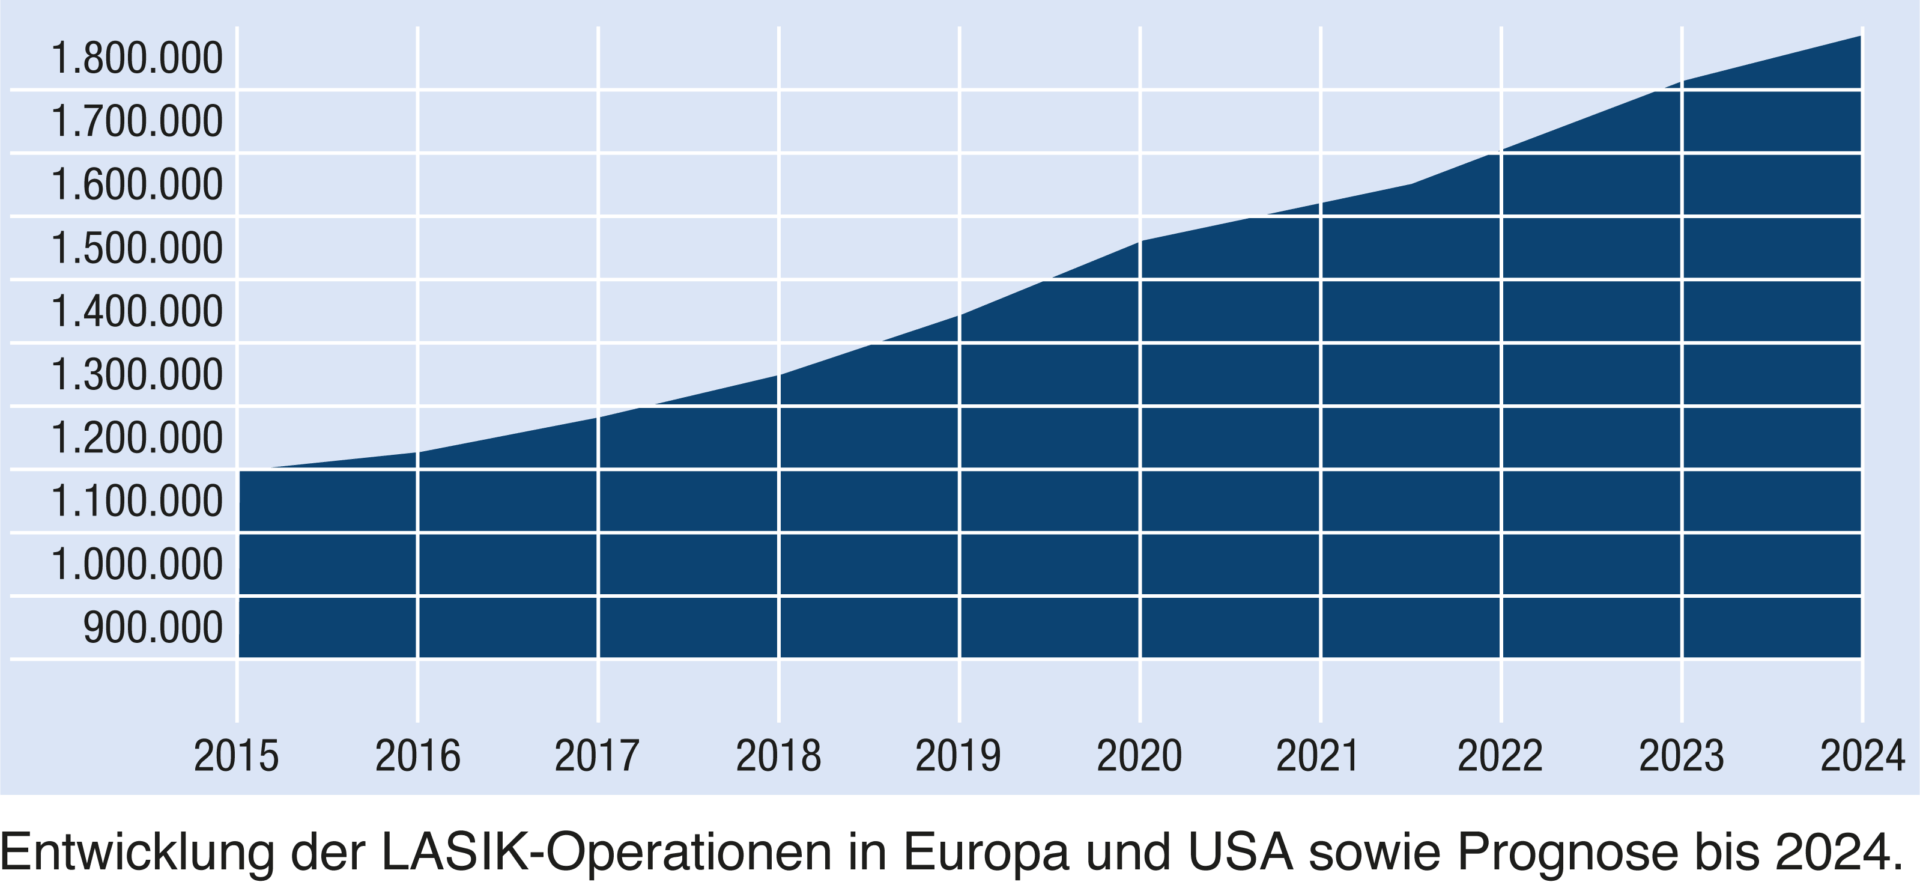 Entwicklung der LASIK-Operationen in Europa und USA sowie Prognose bis 2024.